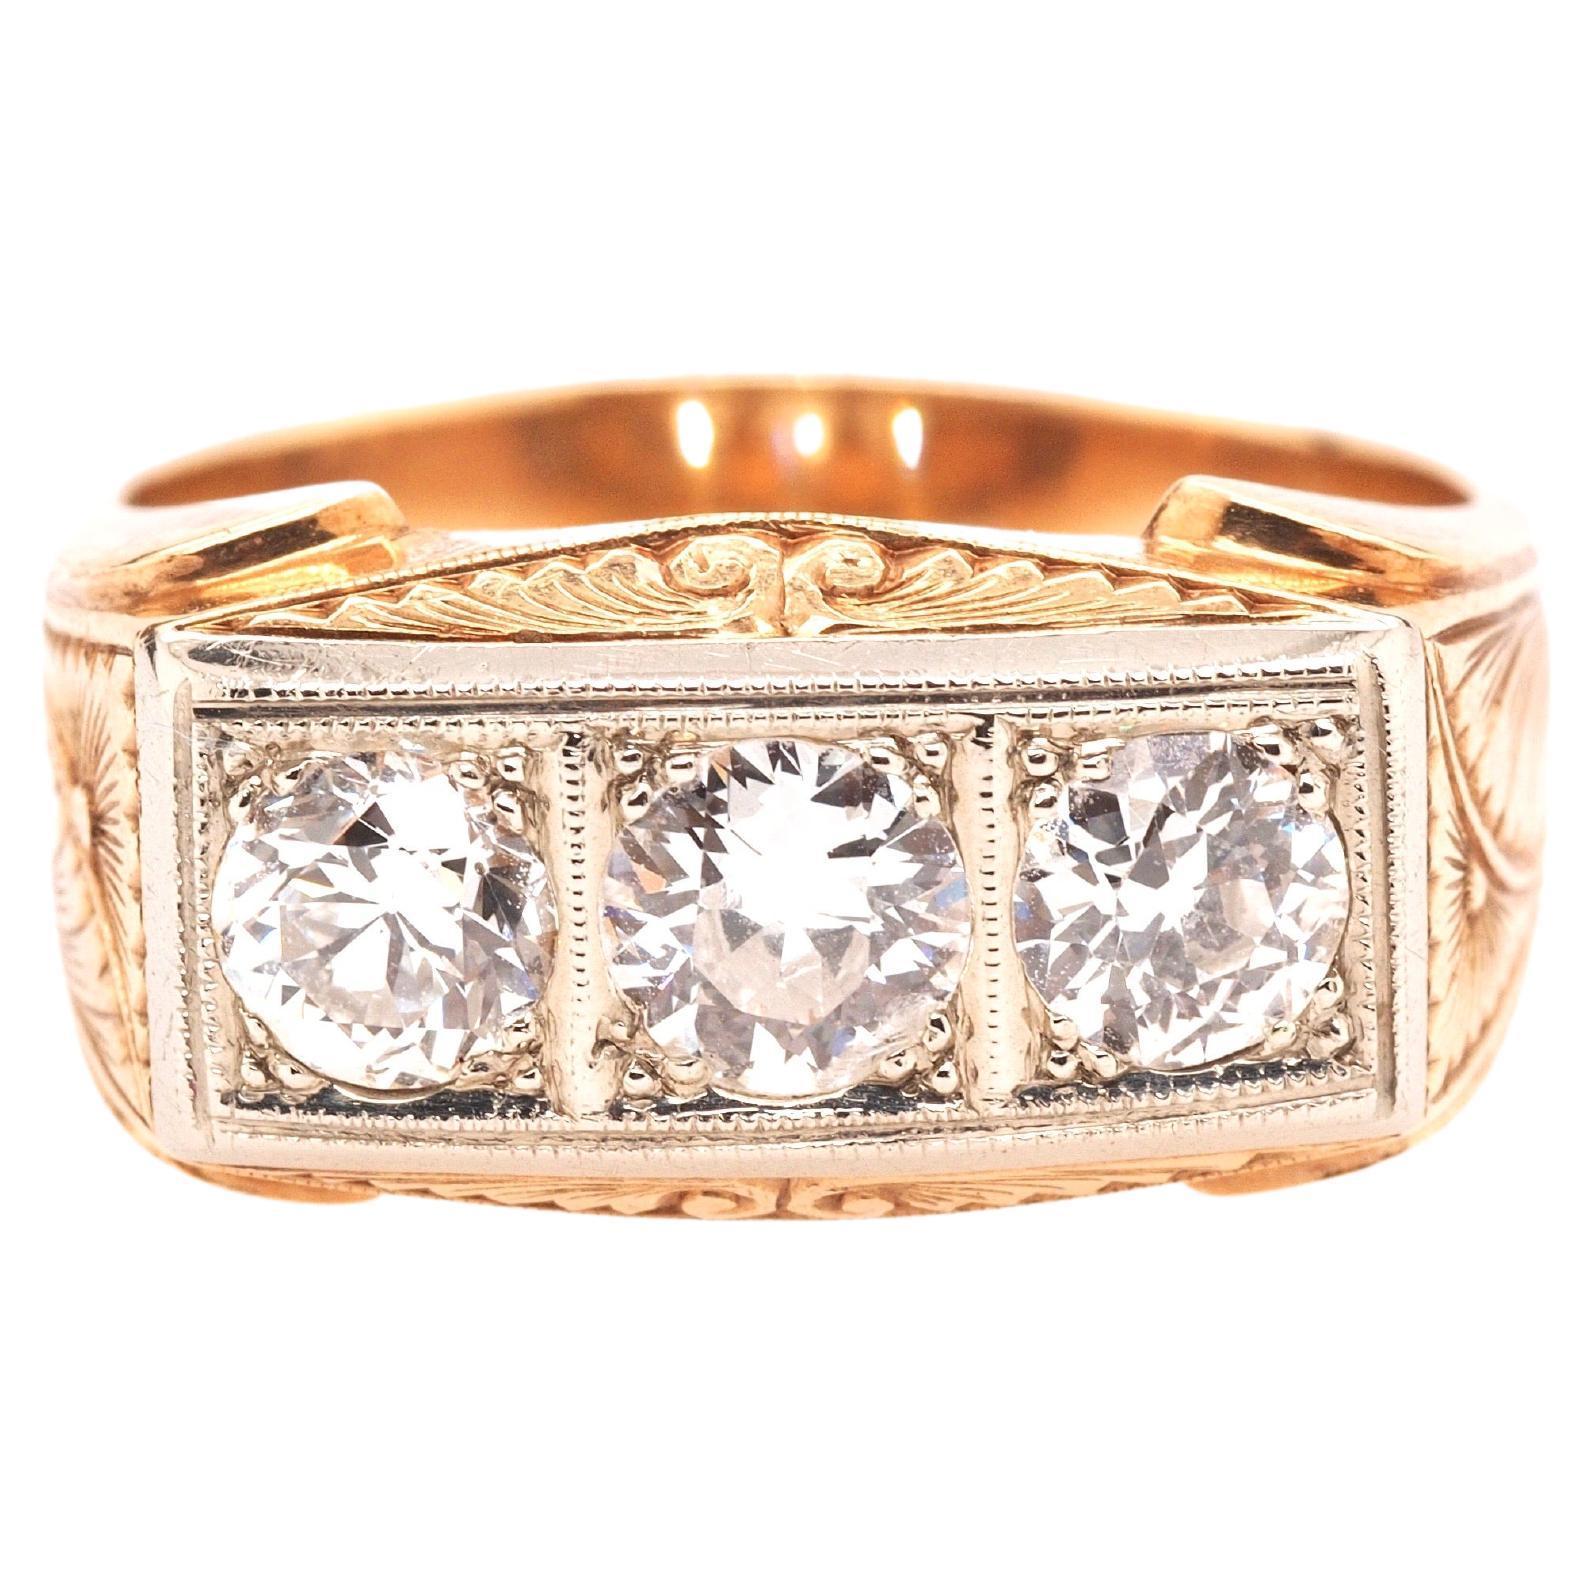 Circa 1900s 14K Yellow Gold Edwardian 1.30ct Diamond Engagement Ring w Engraving